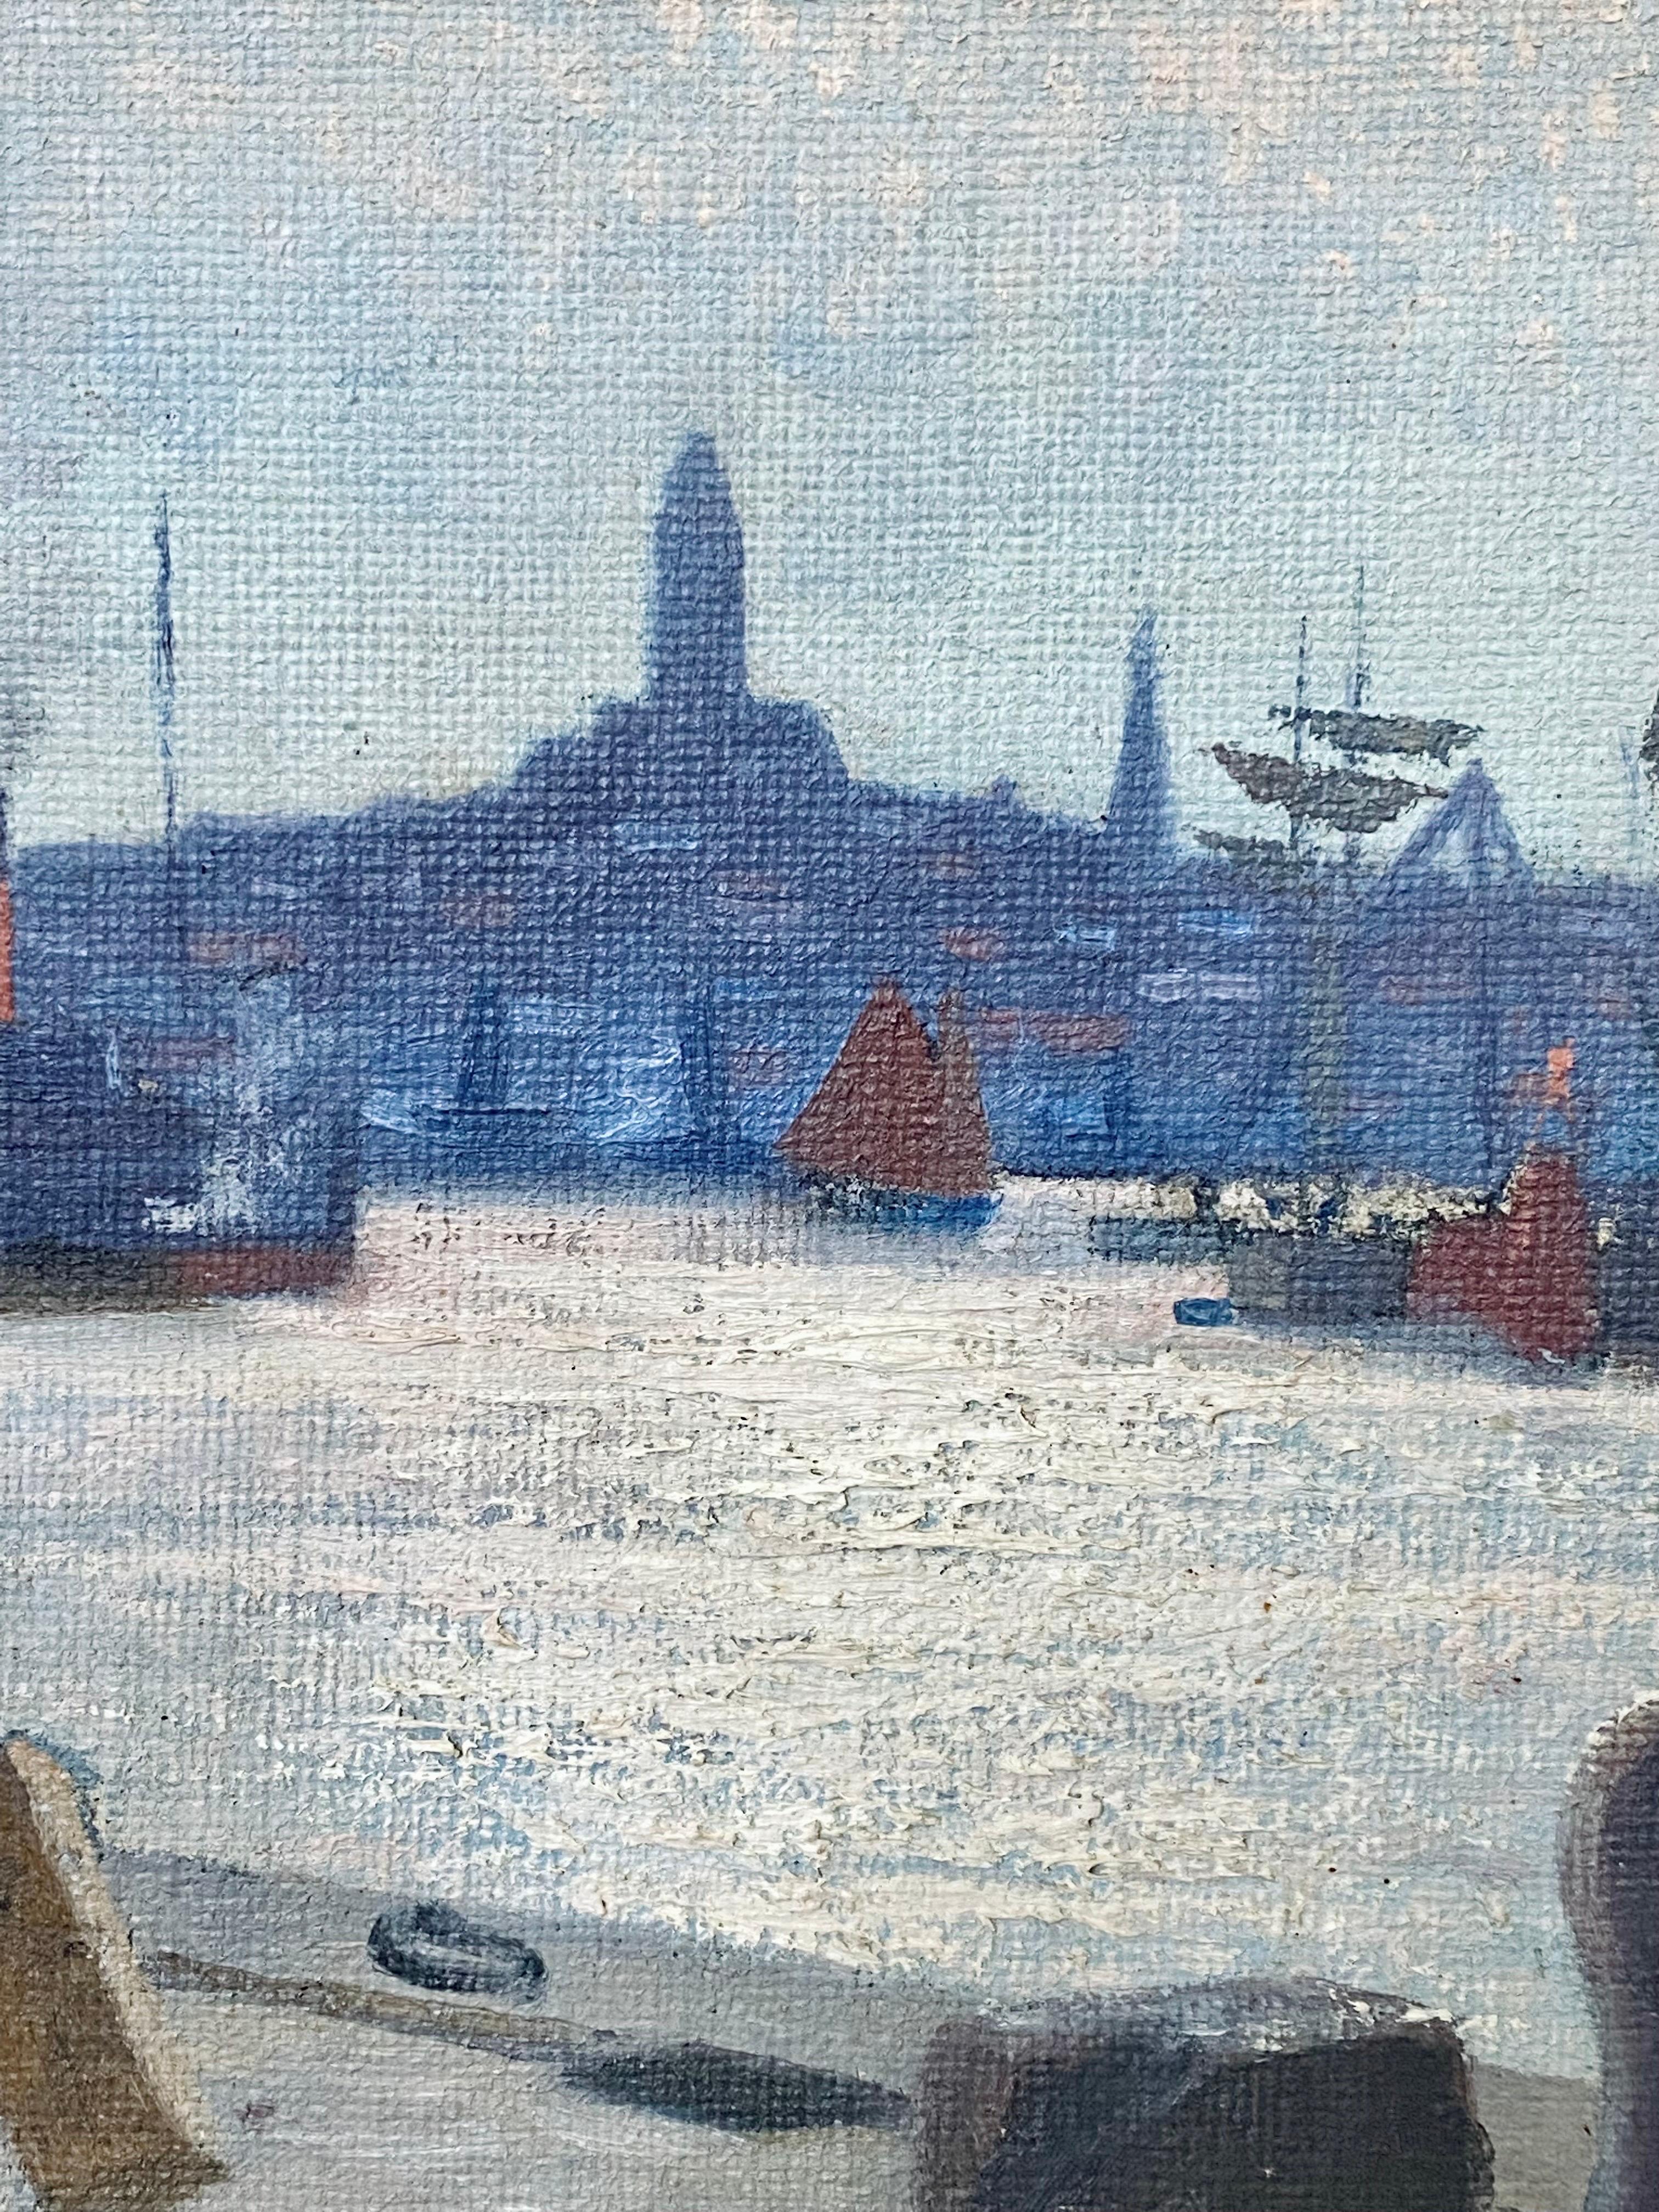 Atemberaubendes skandinavisch-impressionistisches Gemälde, das einen herrlichen Sonnenaufgang über dem Hafen von Göteborg in Schweden zeigt

Der Künstler hat auf wunderbare Weise eingefangen, wie das Licht der aufgehenden Sonne die Landschaft